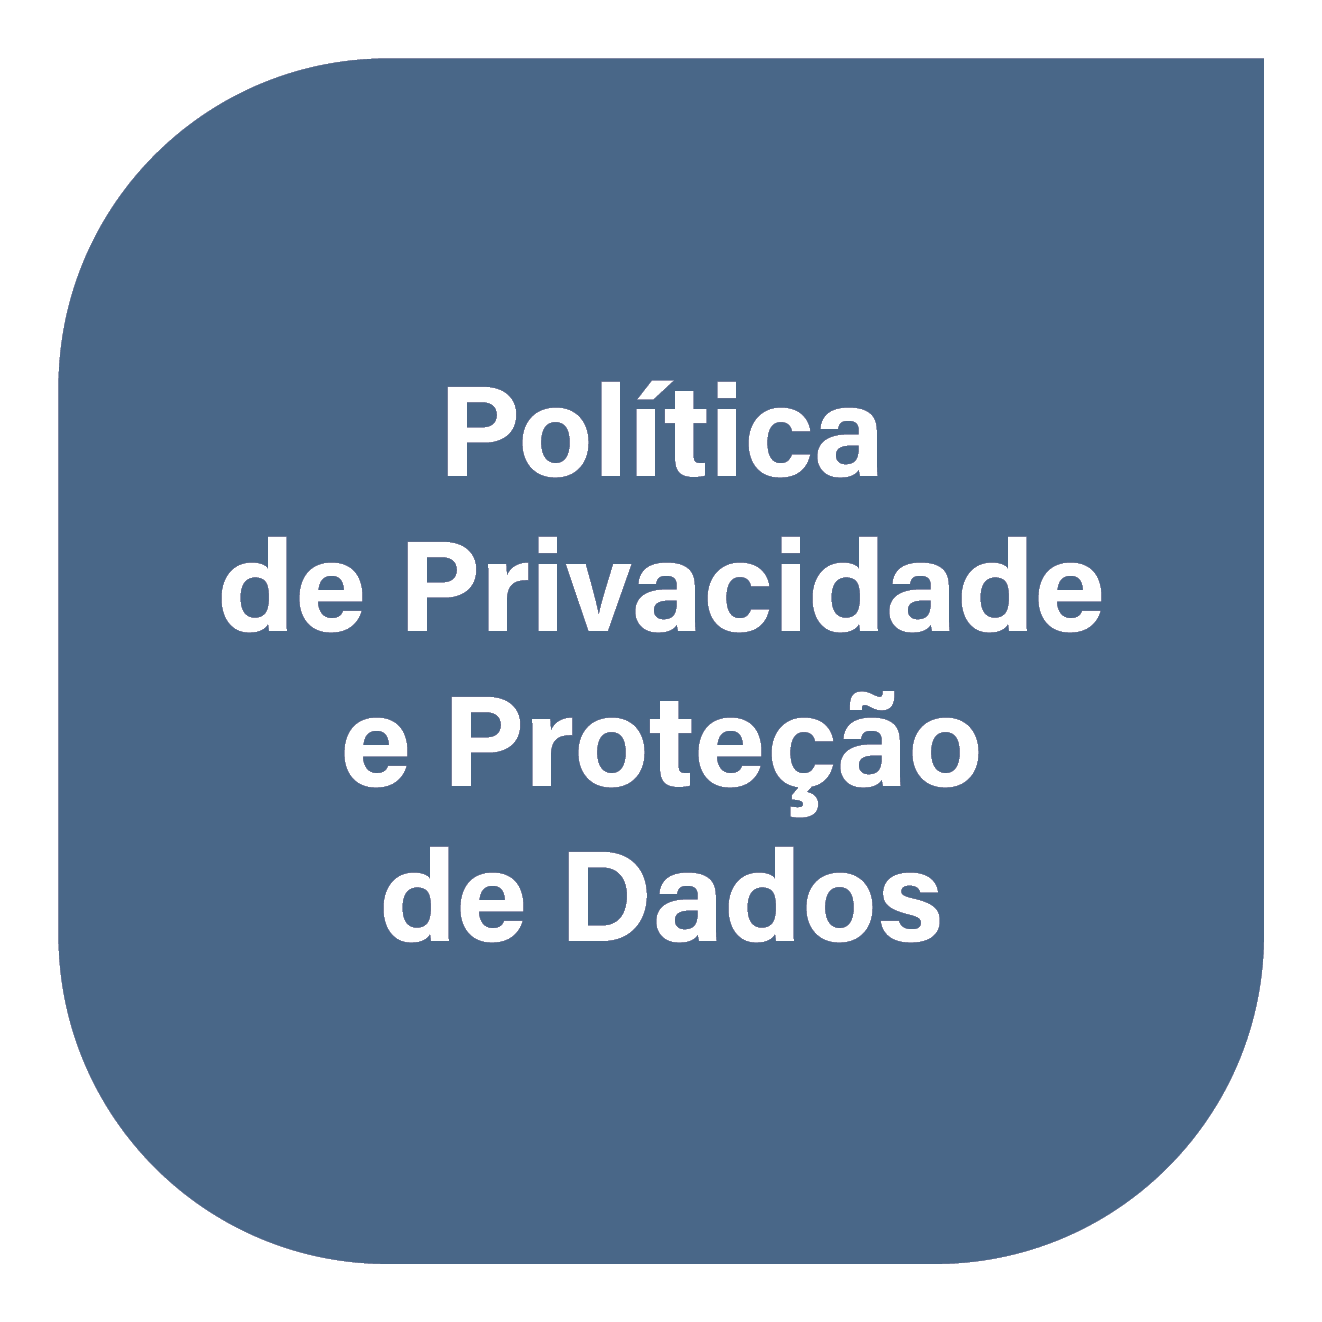 Política de Privacidade e Proteção de Dados